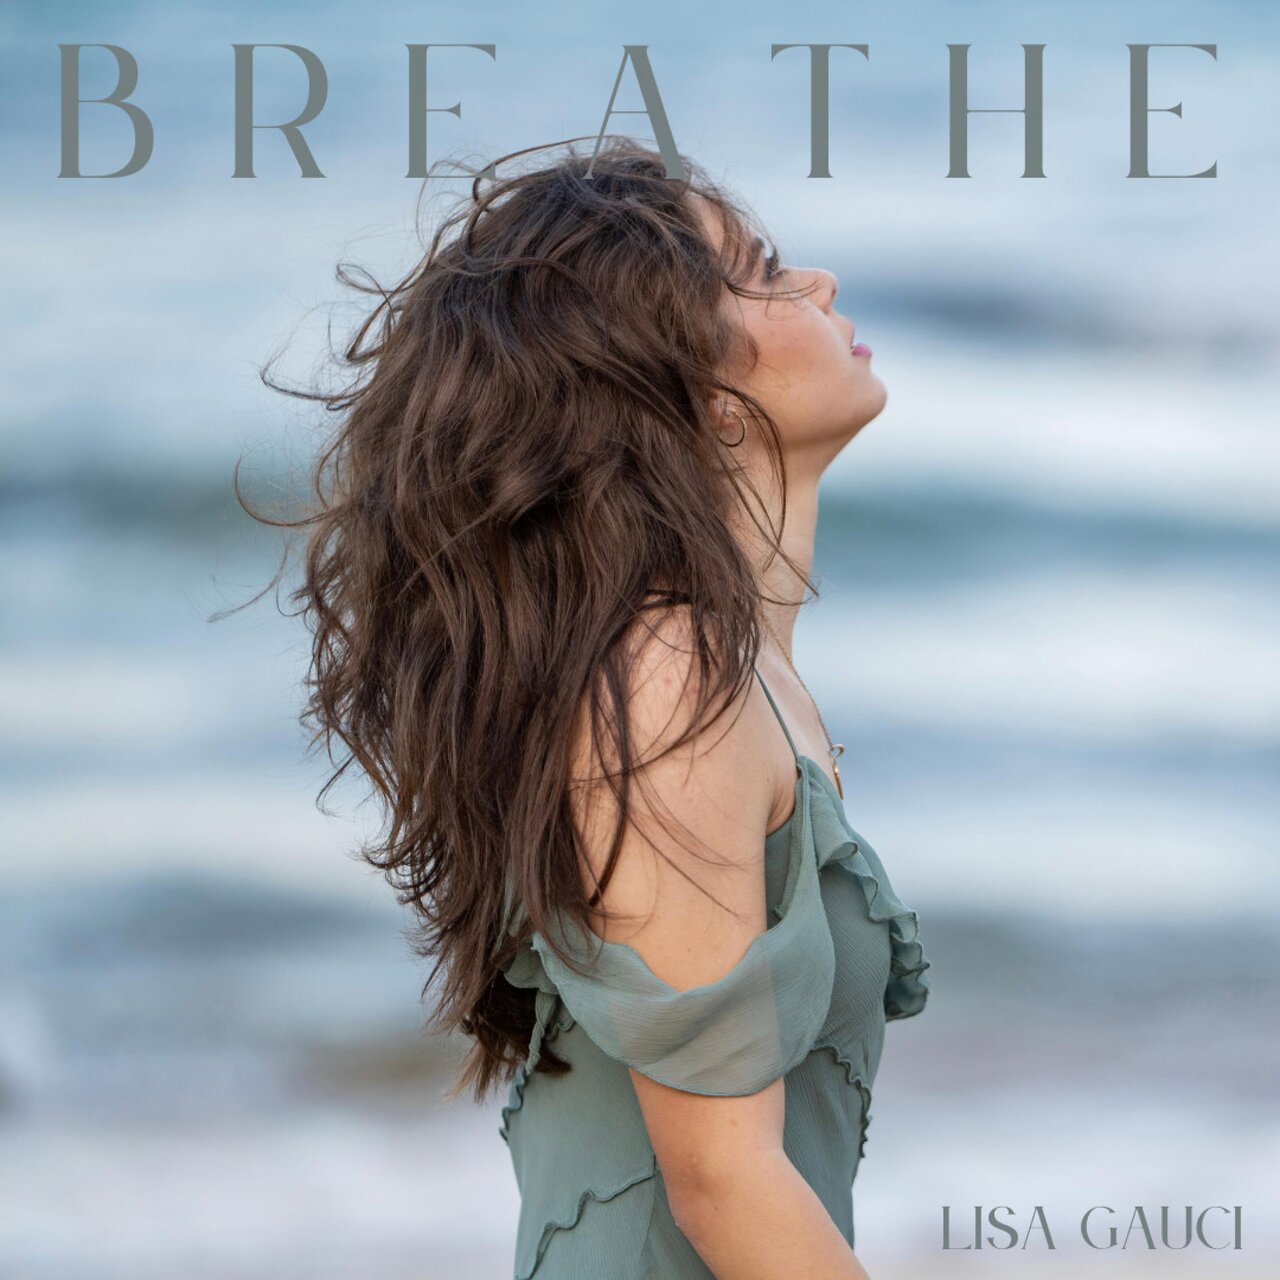 Lisa Gauci — BREATHE cover artwork